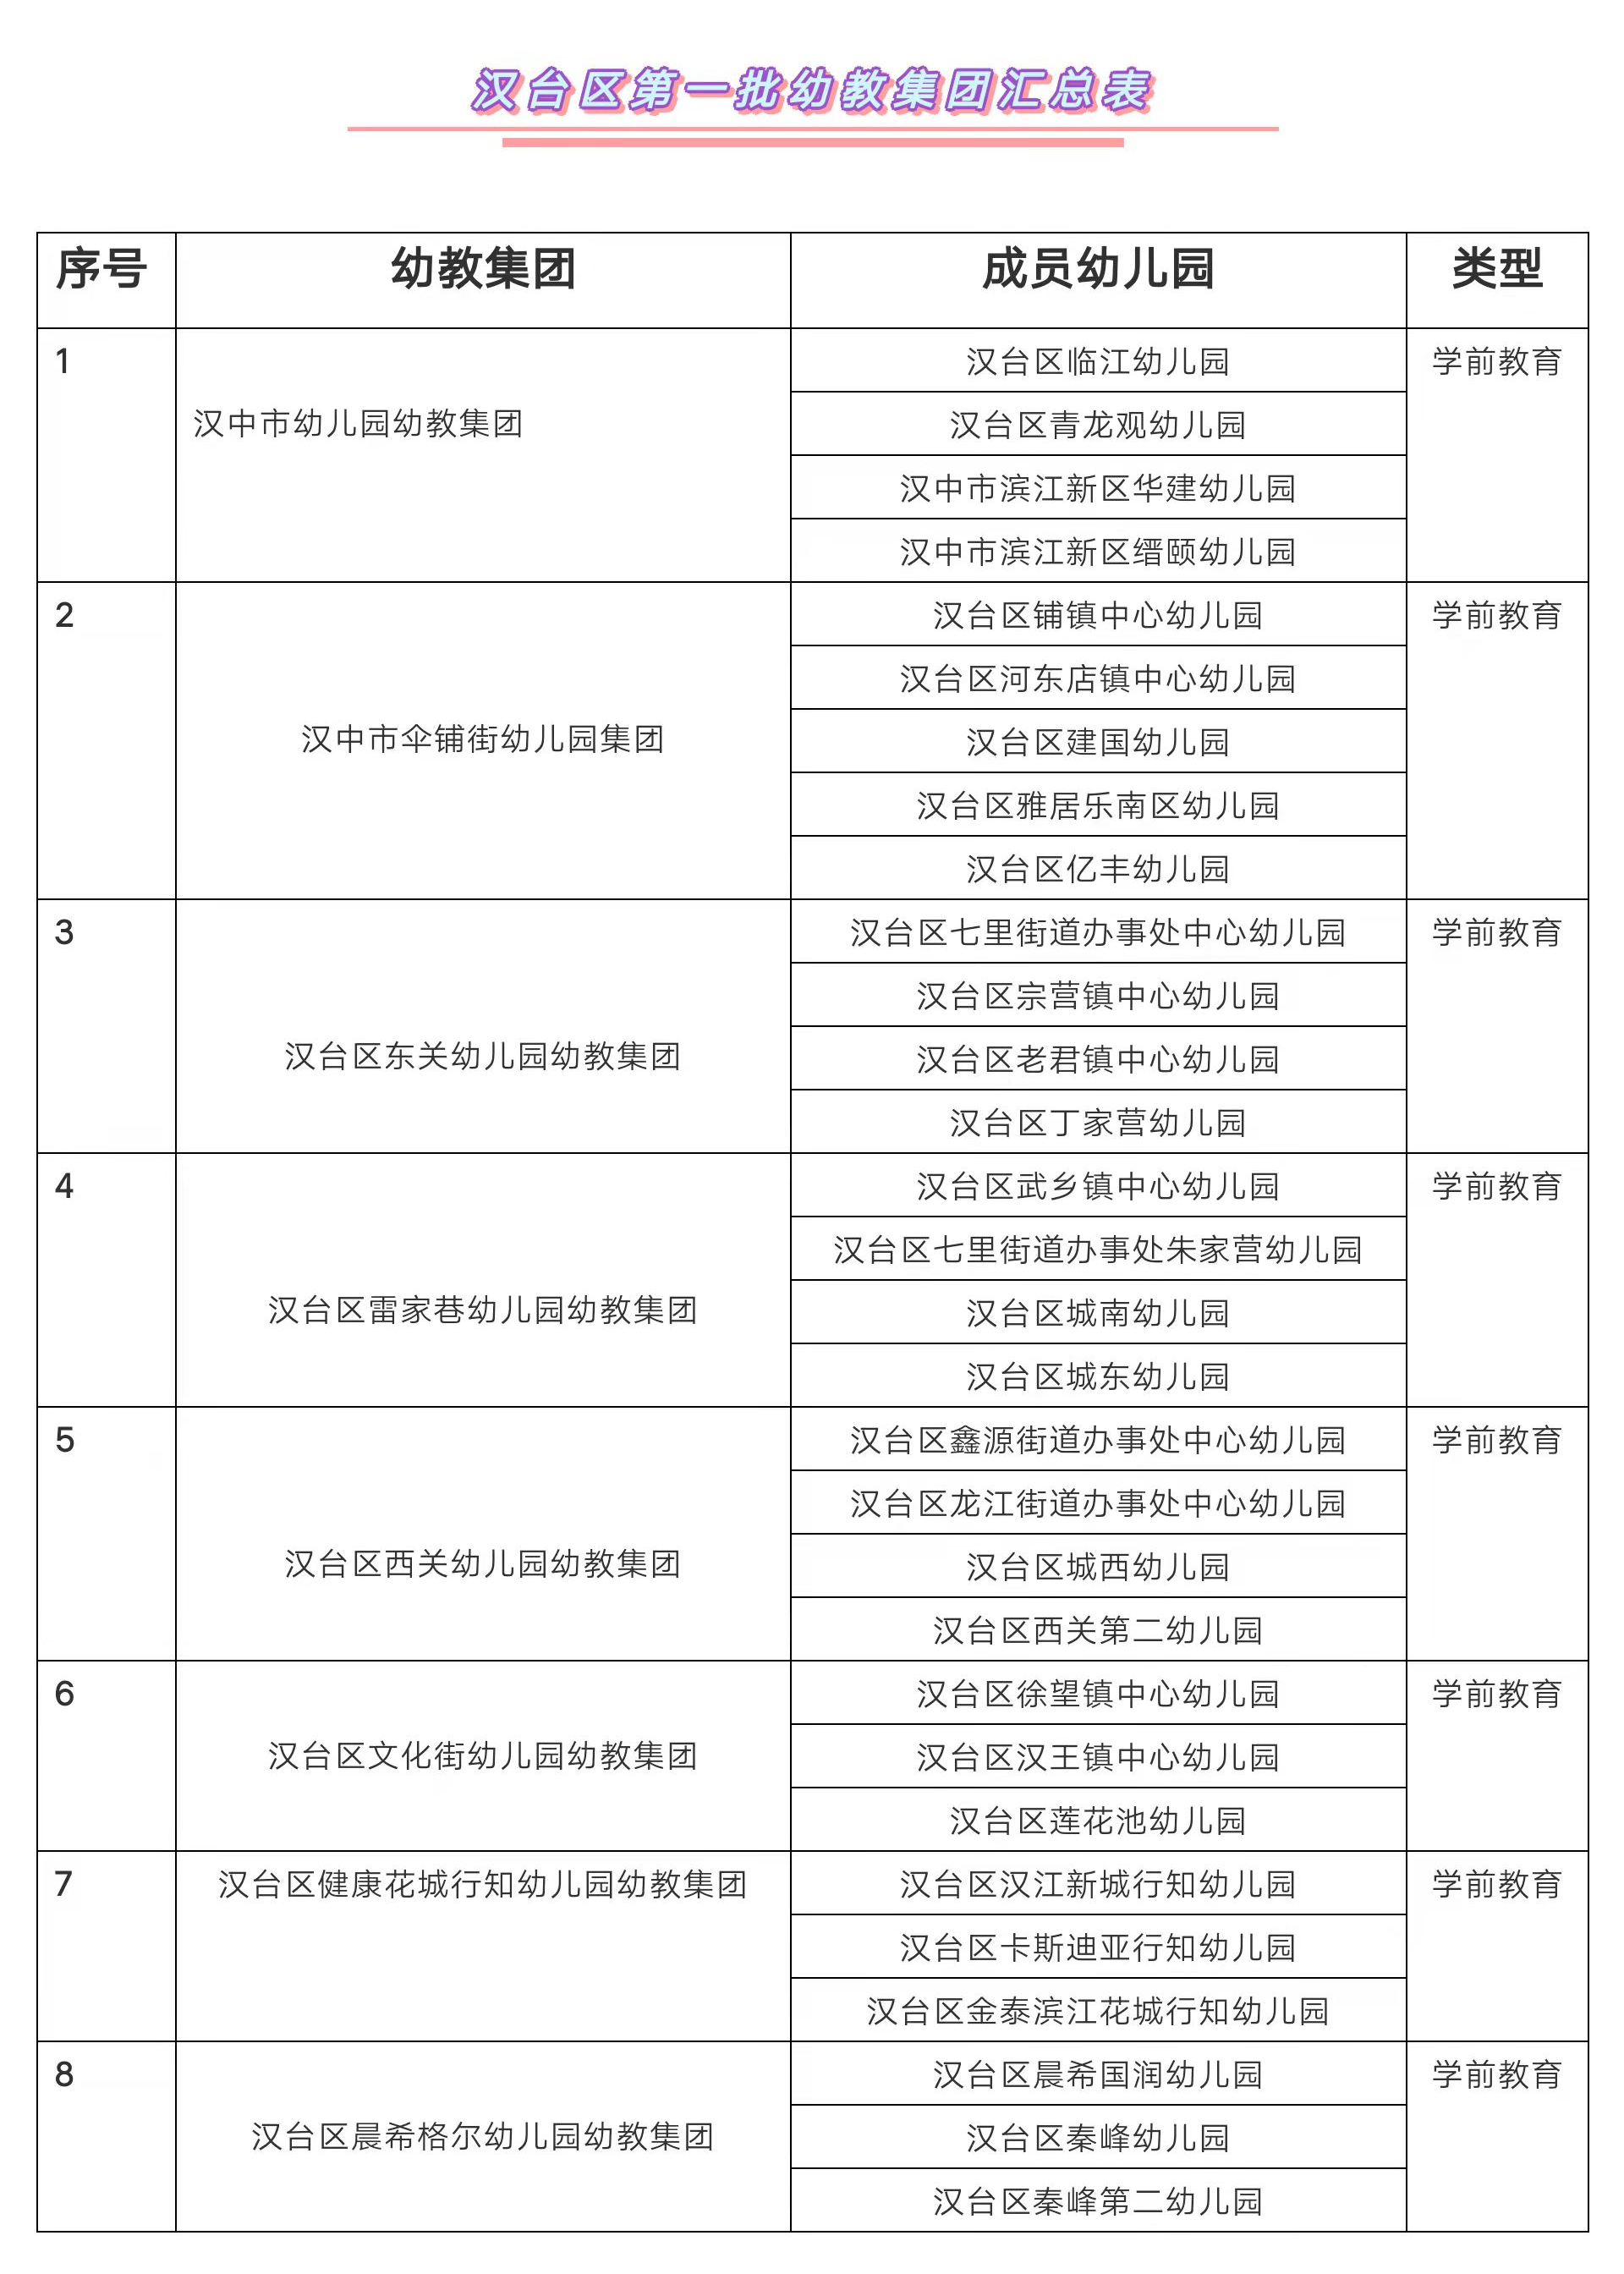 首批幼教集团名单来了！汉中市汉台区启动学前教育集团化办学